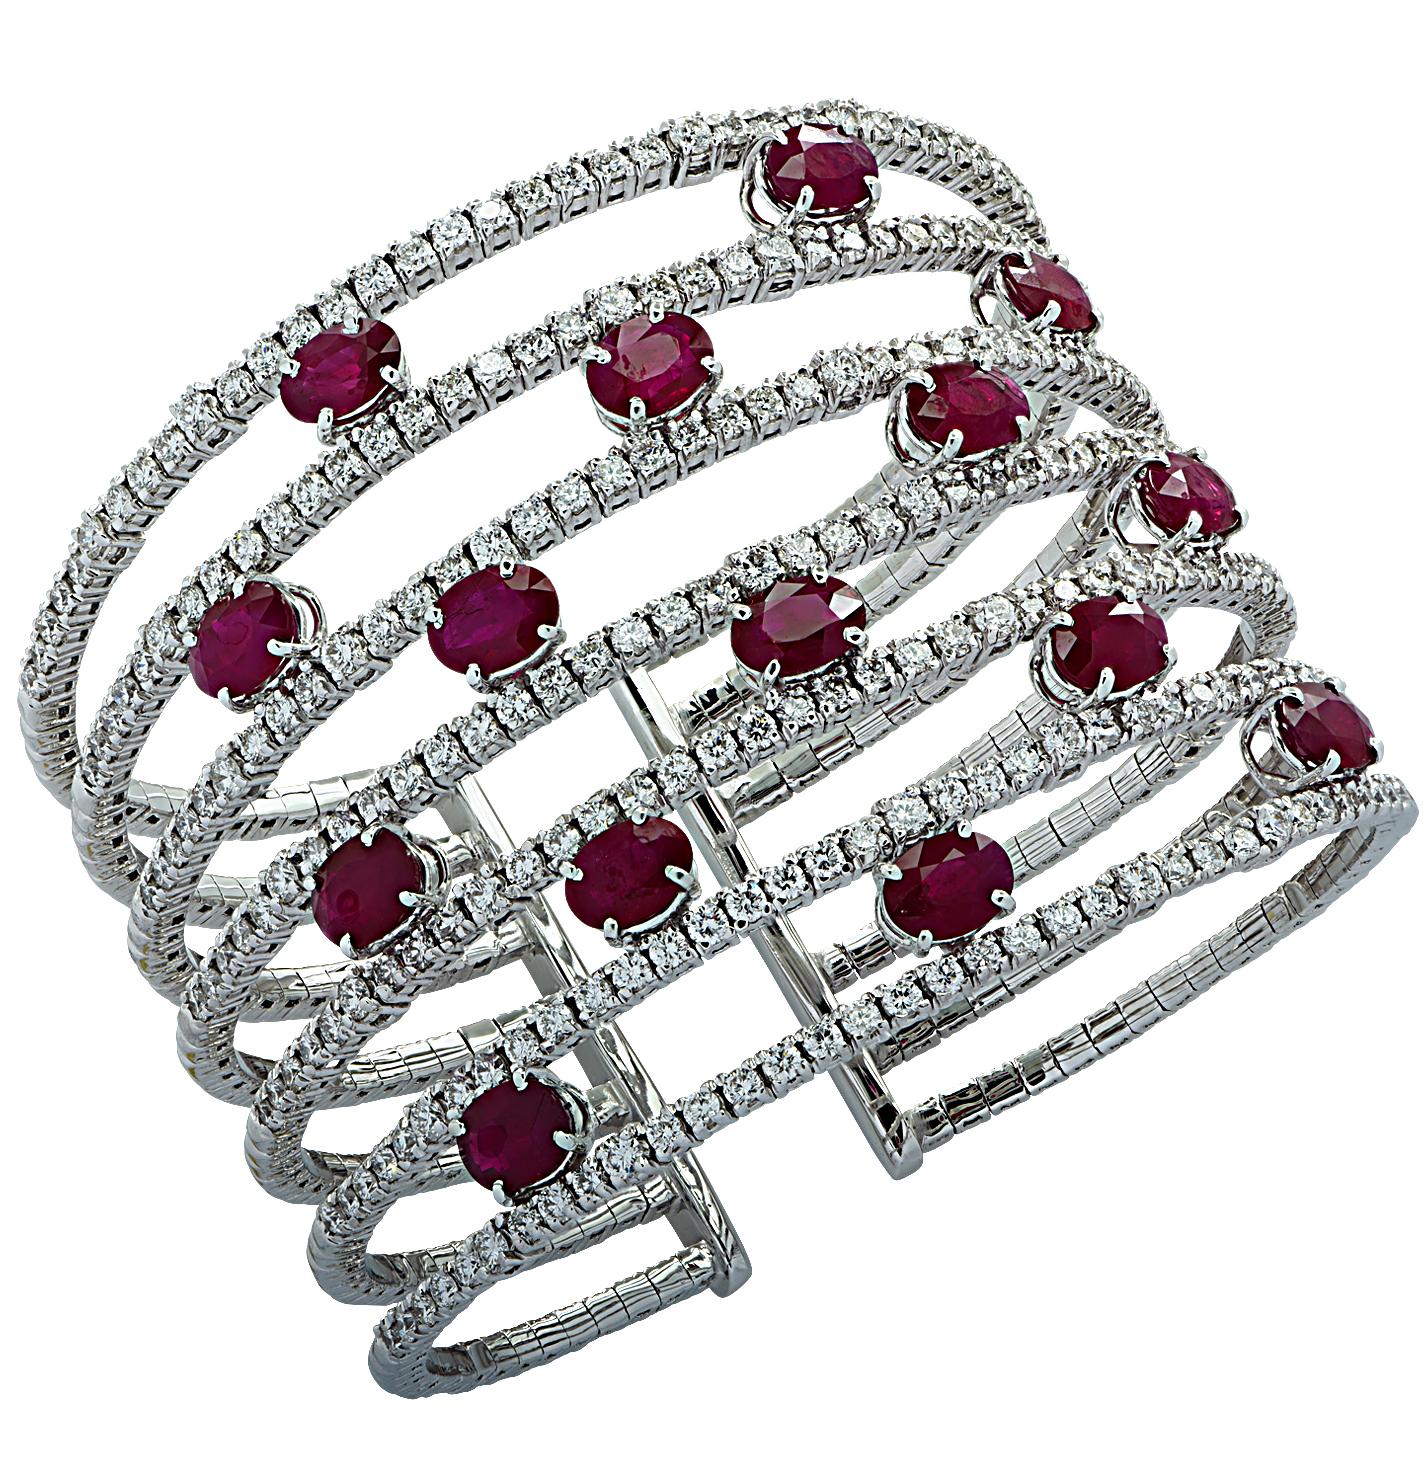 Vivid Diamonds Burma Ruby & Diamon Cuff Bangle Bracelet In Excellent Condition For Sale In Miami, FL